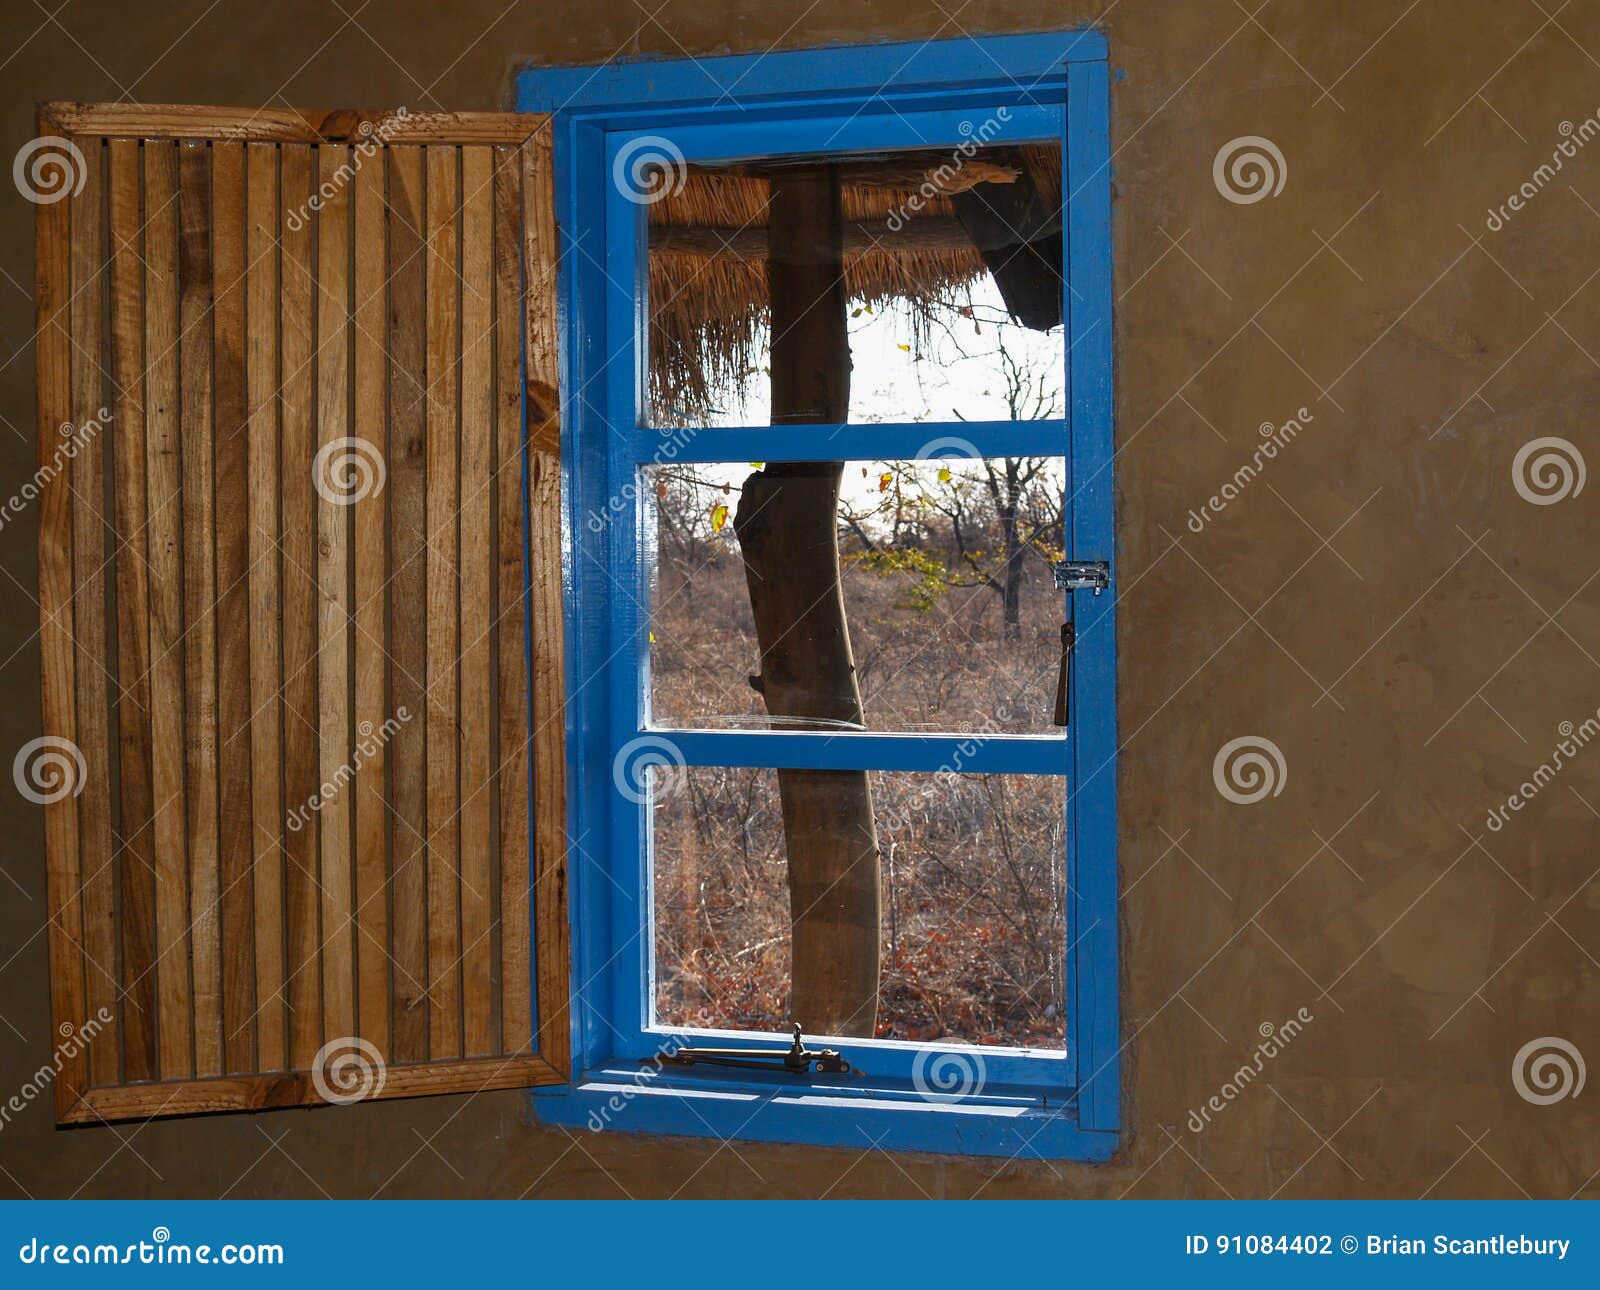 bright blue window with open slat slat wooeden shutter and view